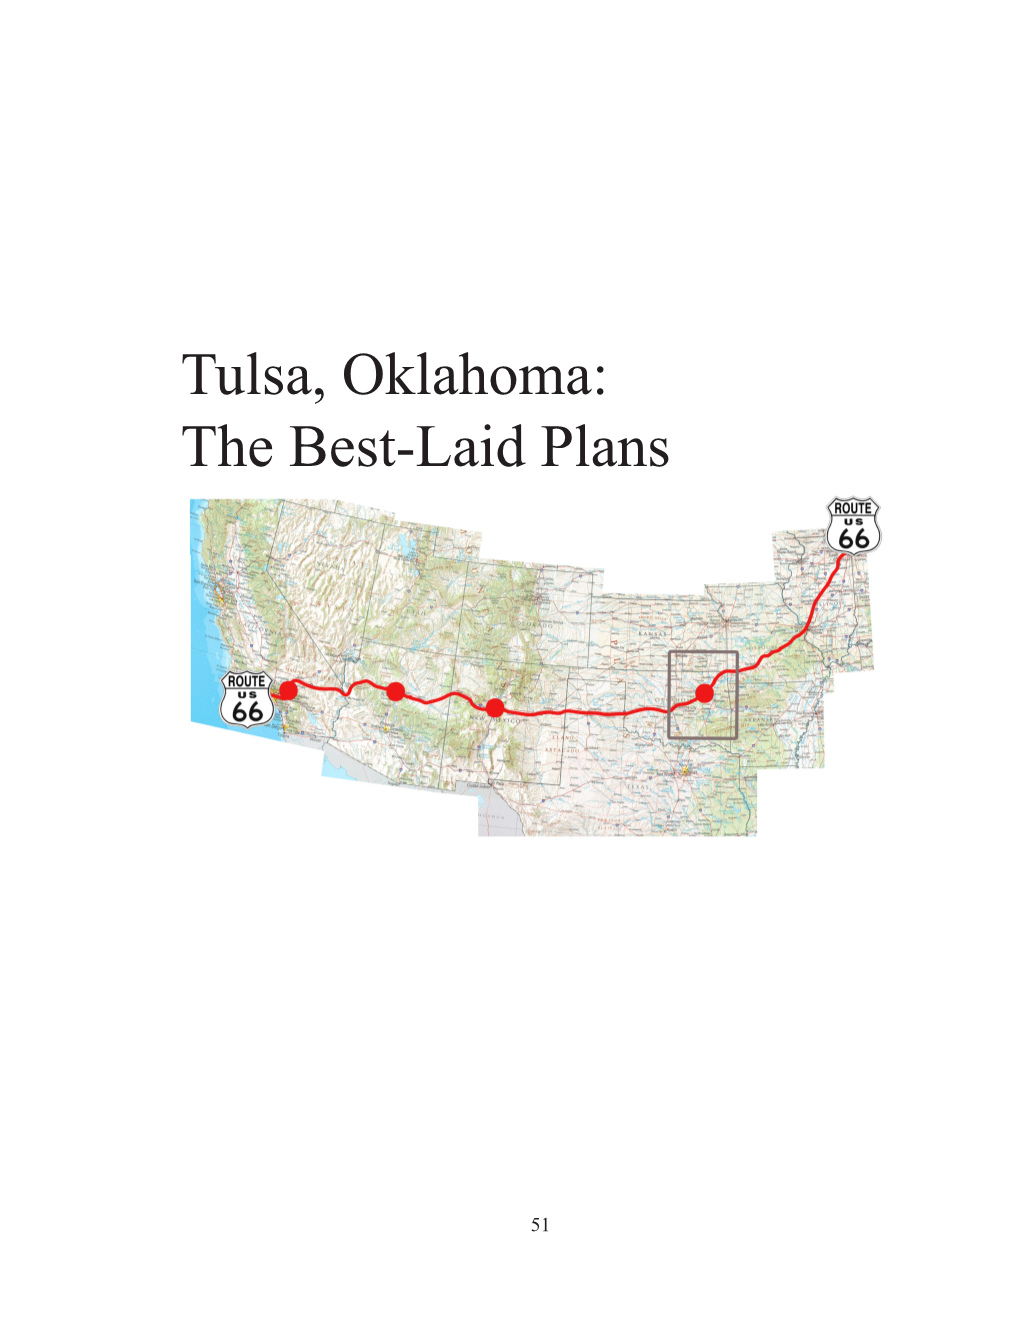 Tulsa, Oklahoma: the Best-Laid Plans